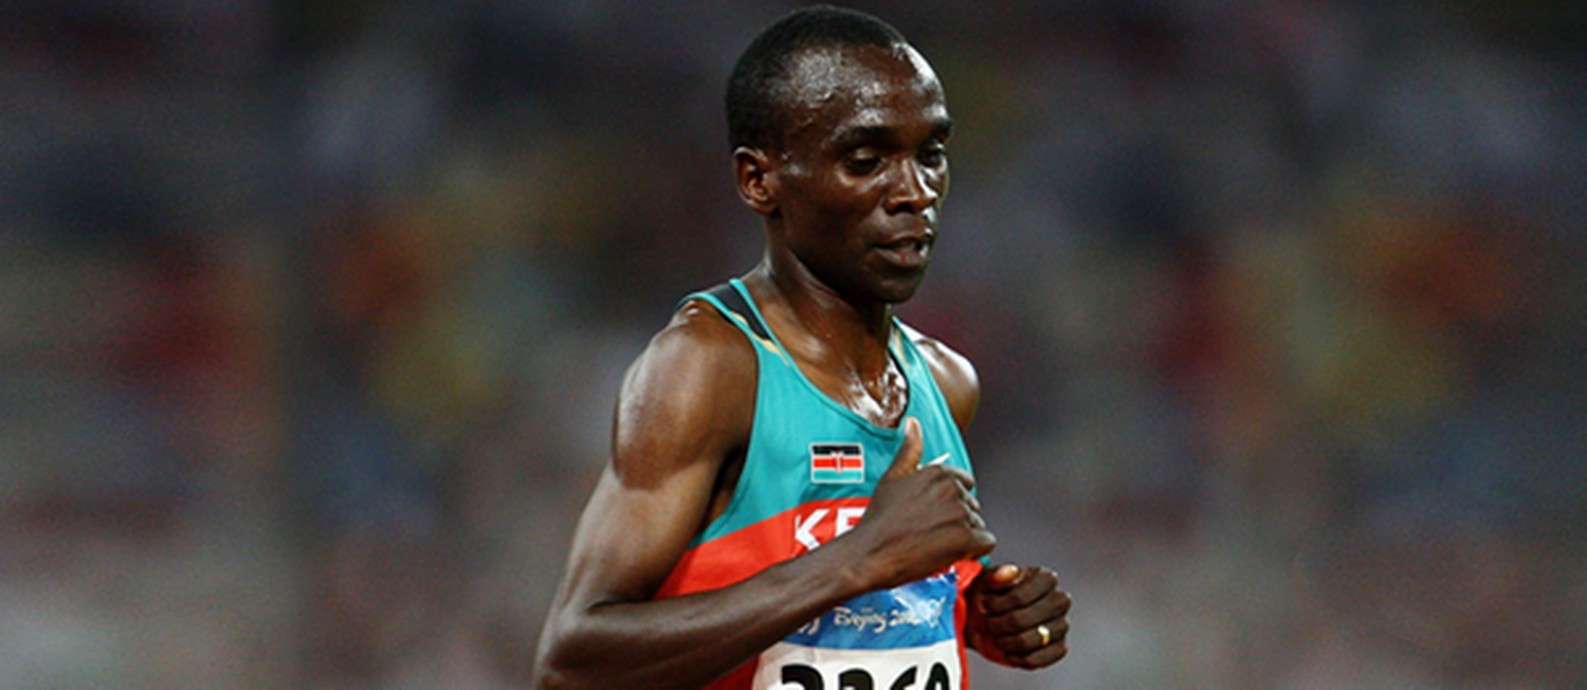 O queniano Eliud Kipchoge, um dos favoritos na maratona Foto: Divulgação/IAAF